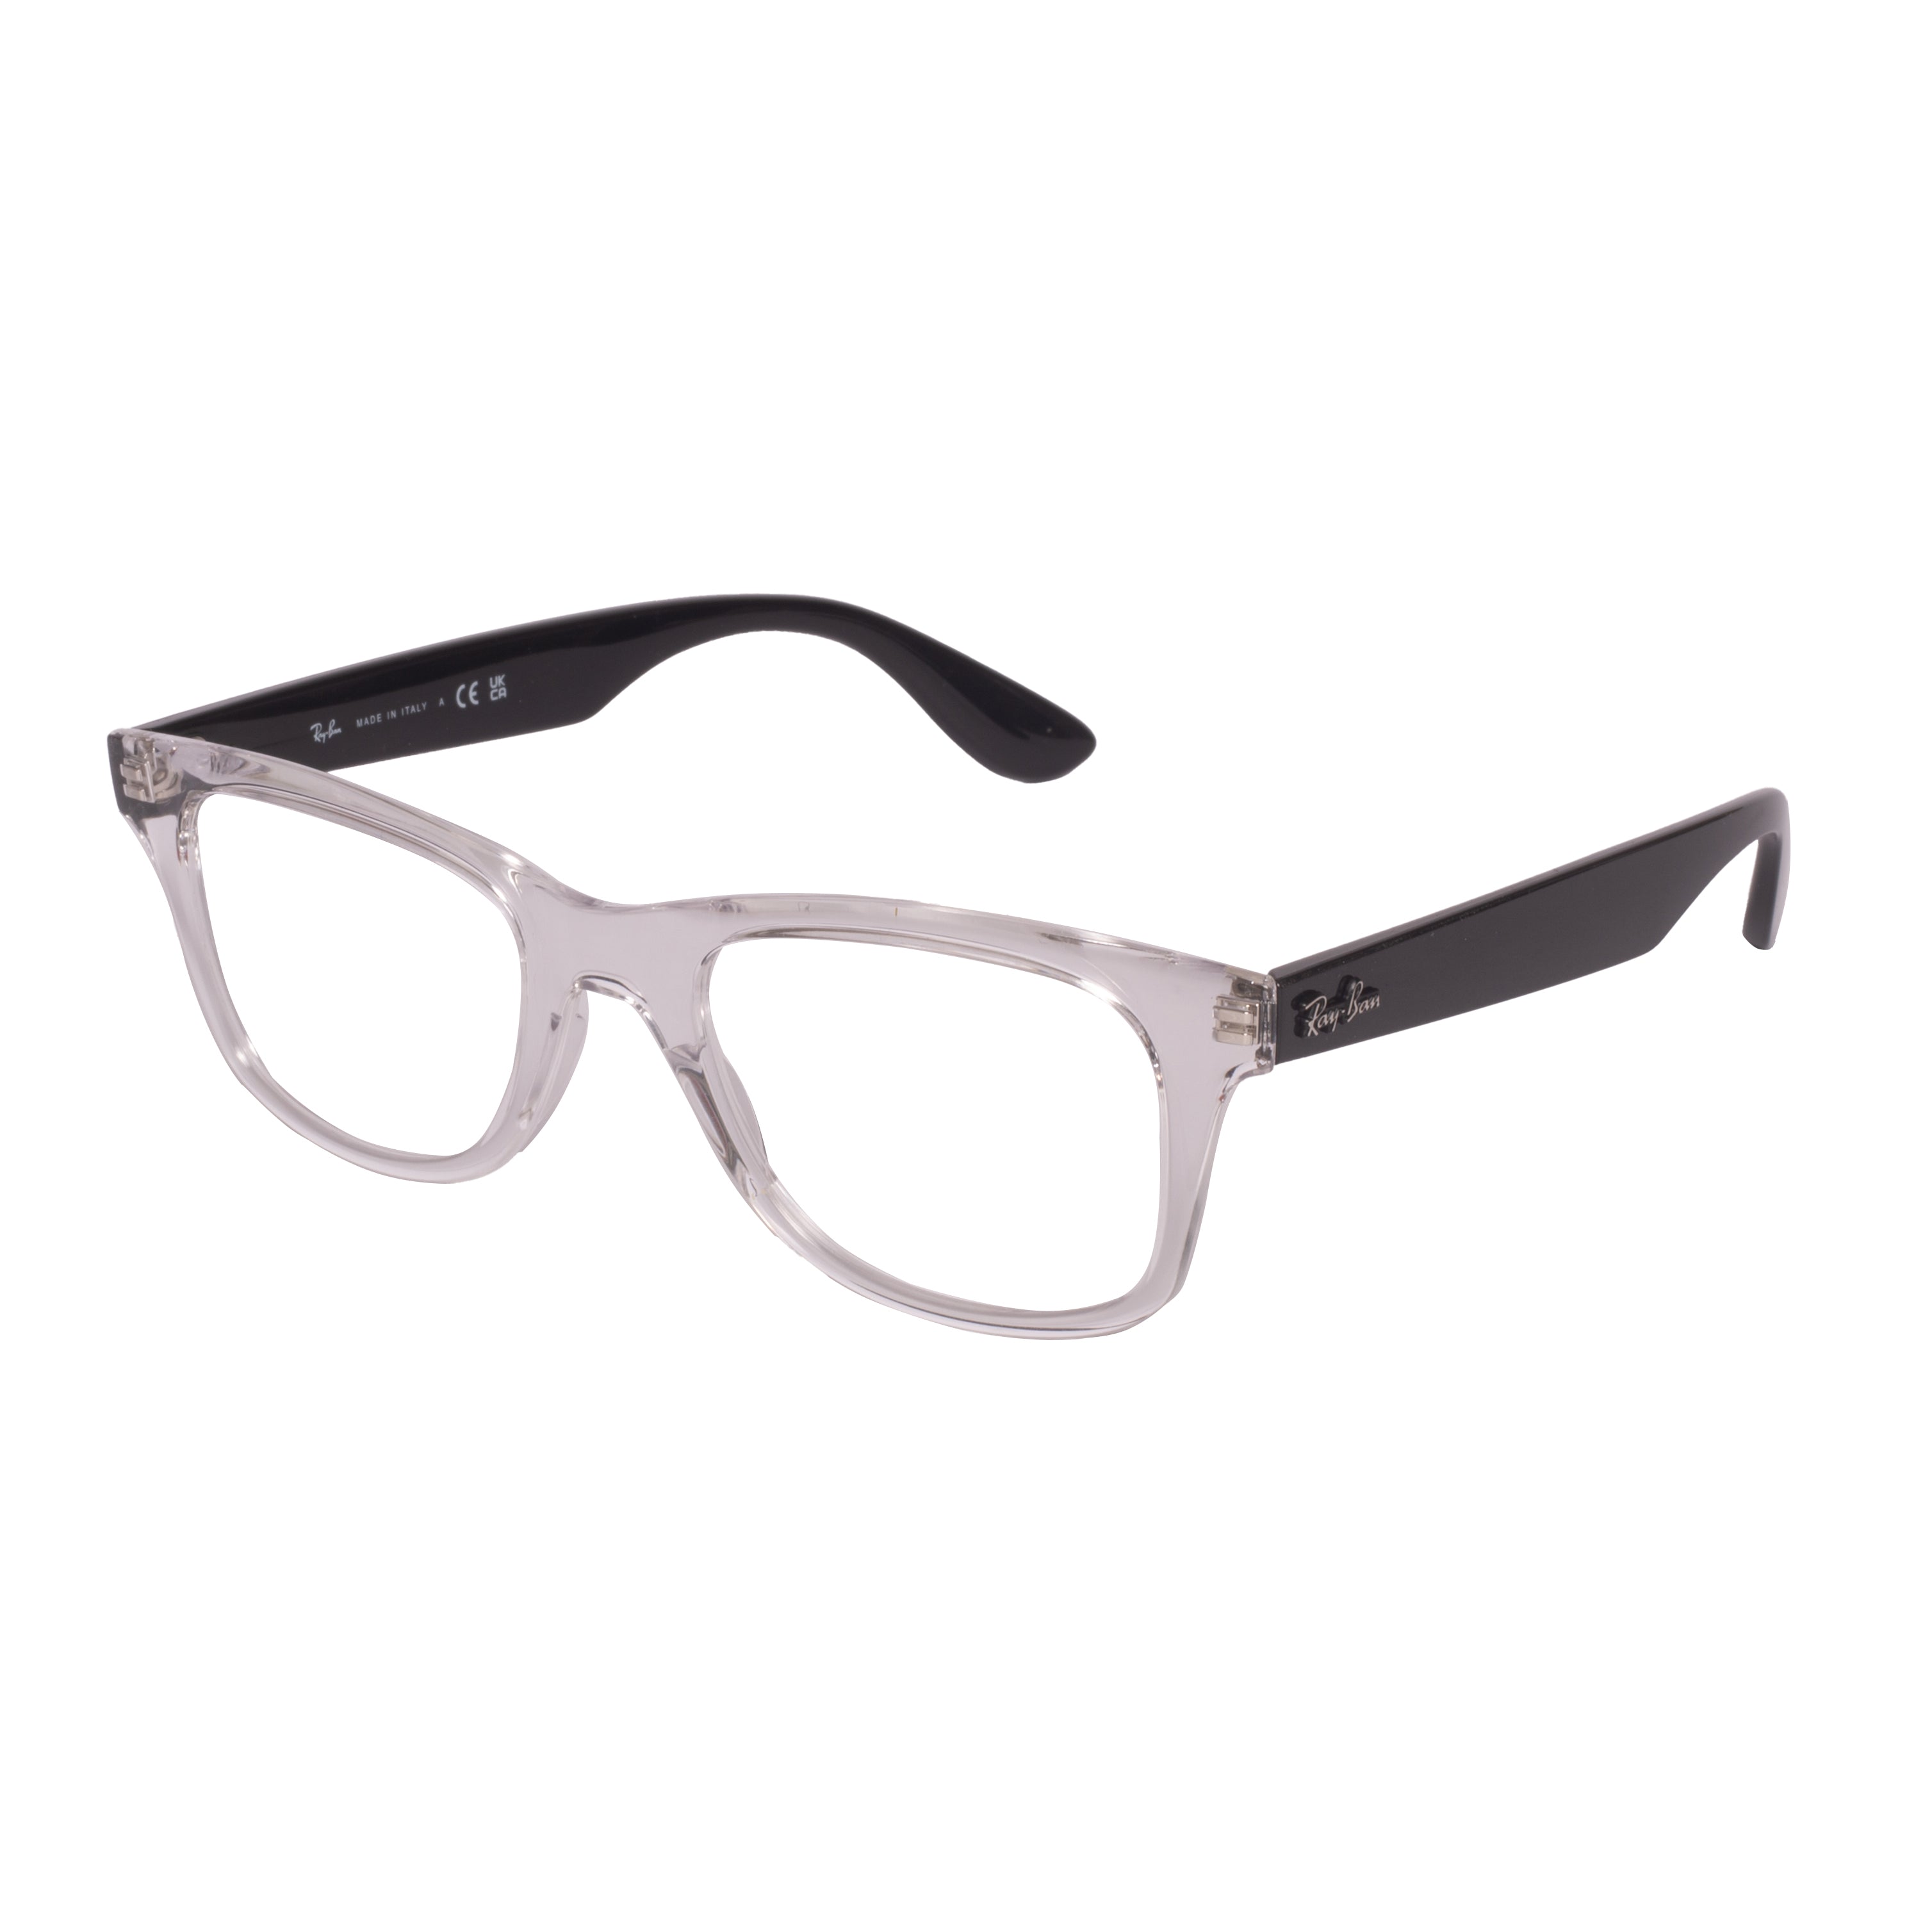 Rayban-RX4640V-50-5943 Eyeglasses - Premium Eyeglasses from Rayban - Just Rs. 7990! Shop now at Laxmi Opticians